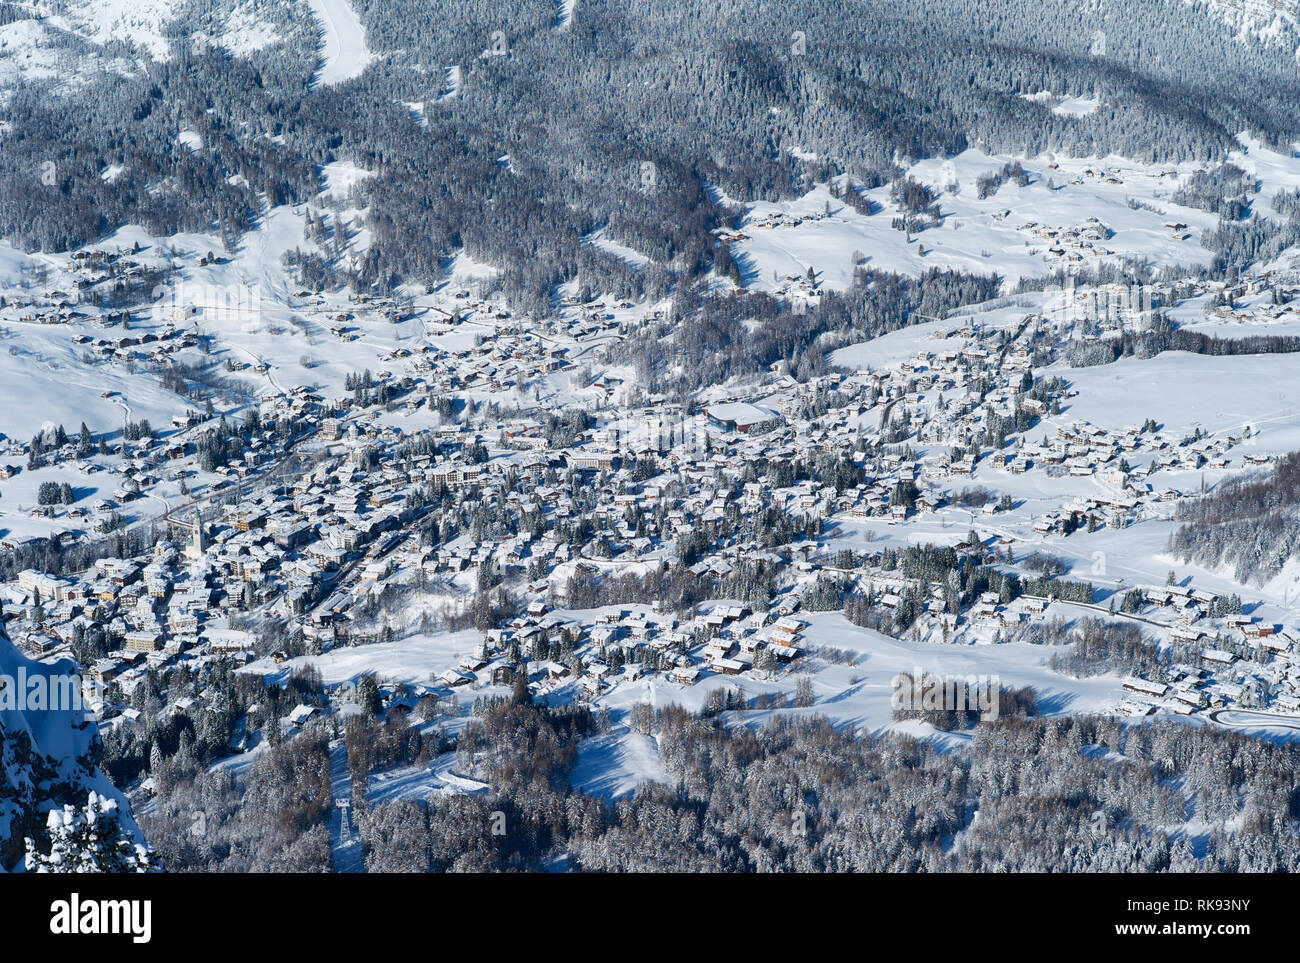 Das romantische, Verschneite Skigebiet Cortina d'Ampezzo in den italienischen Dolomiten von Faloria gesehen, eingebettet in eine wunderschöne Winterlandschaft. Stockfoto